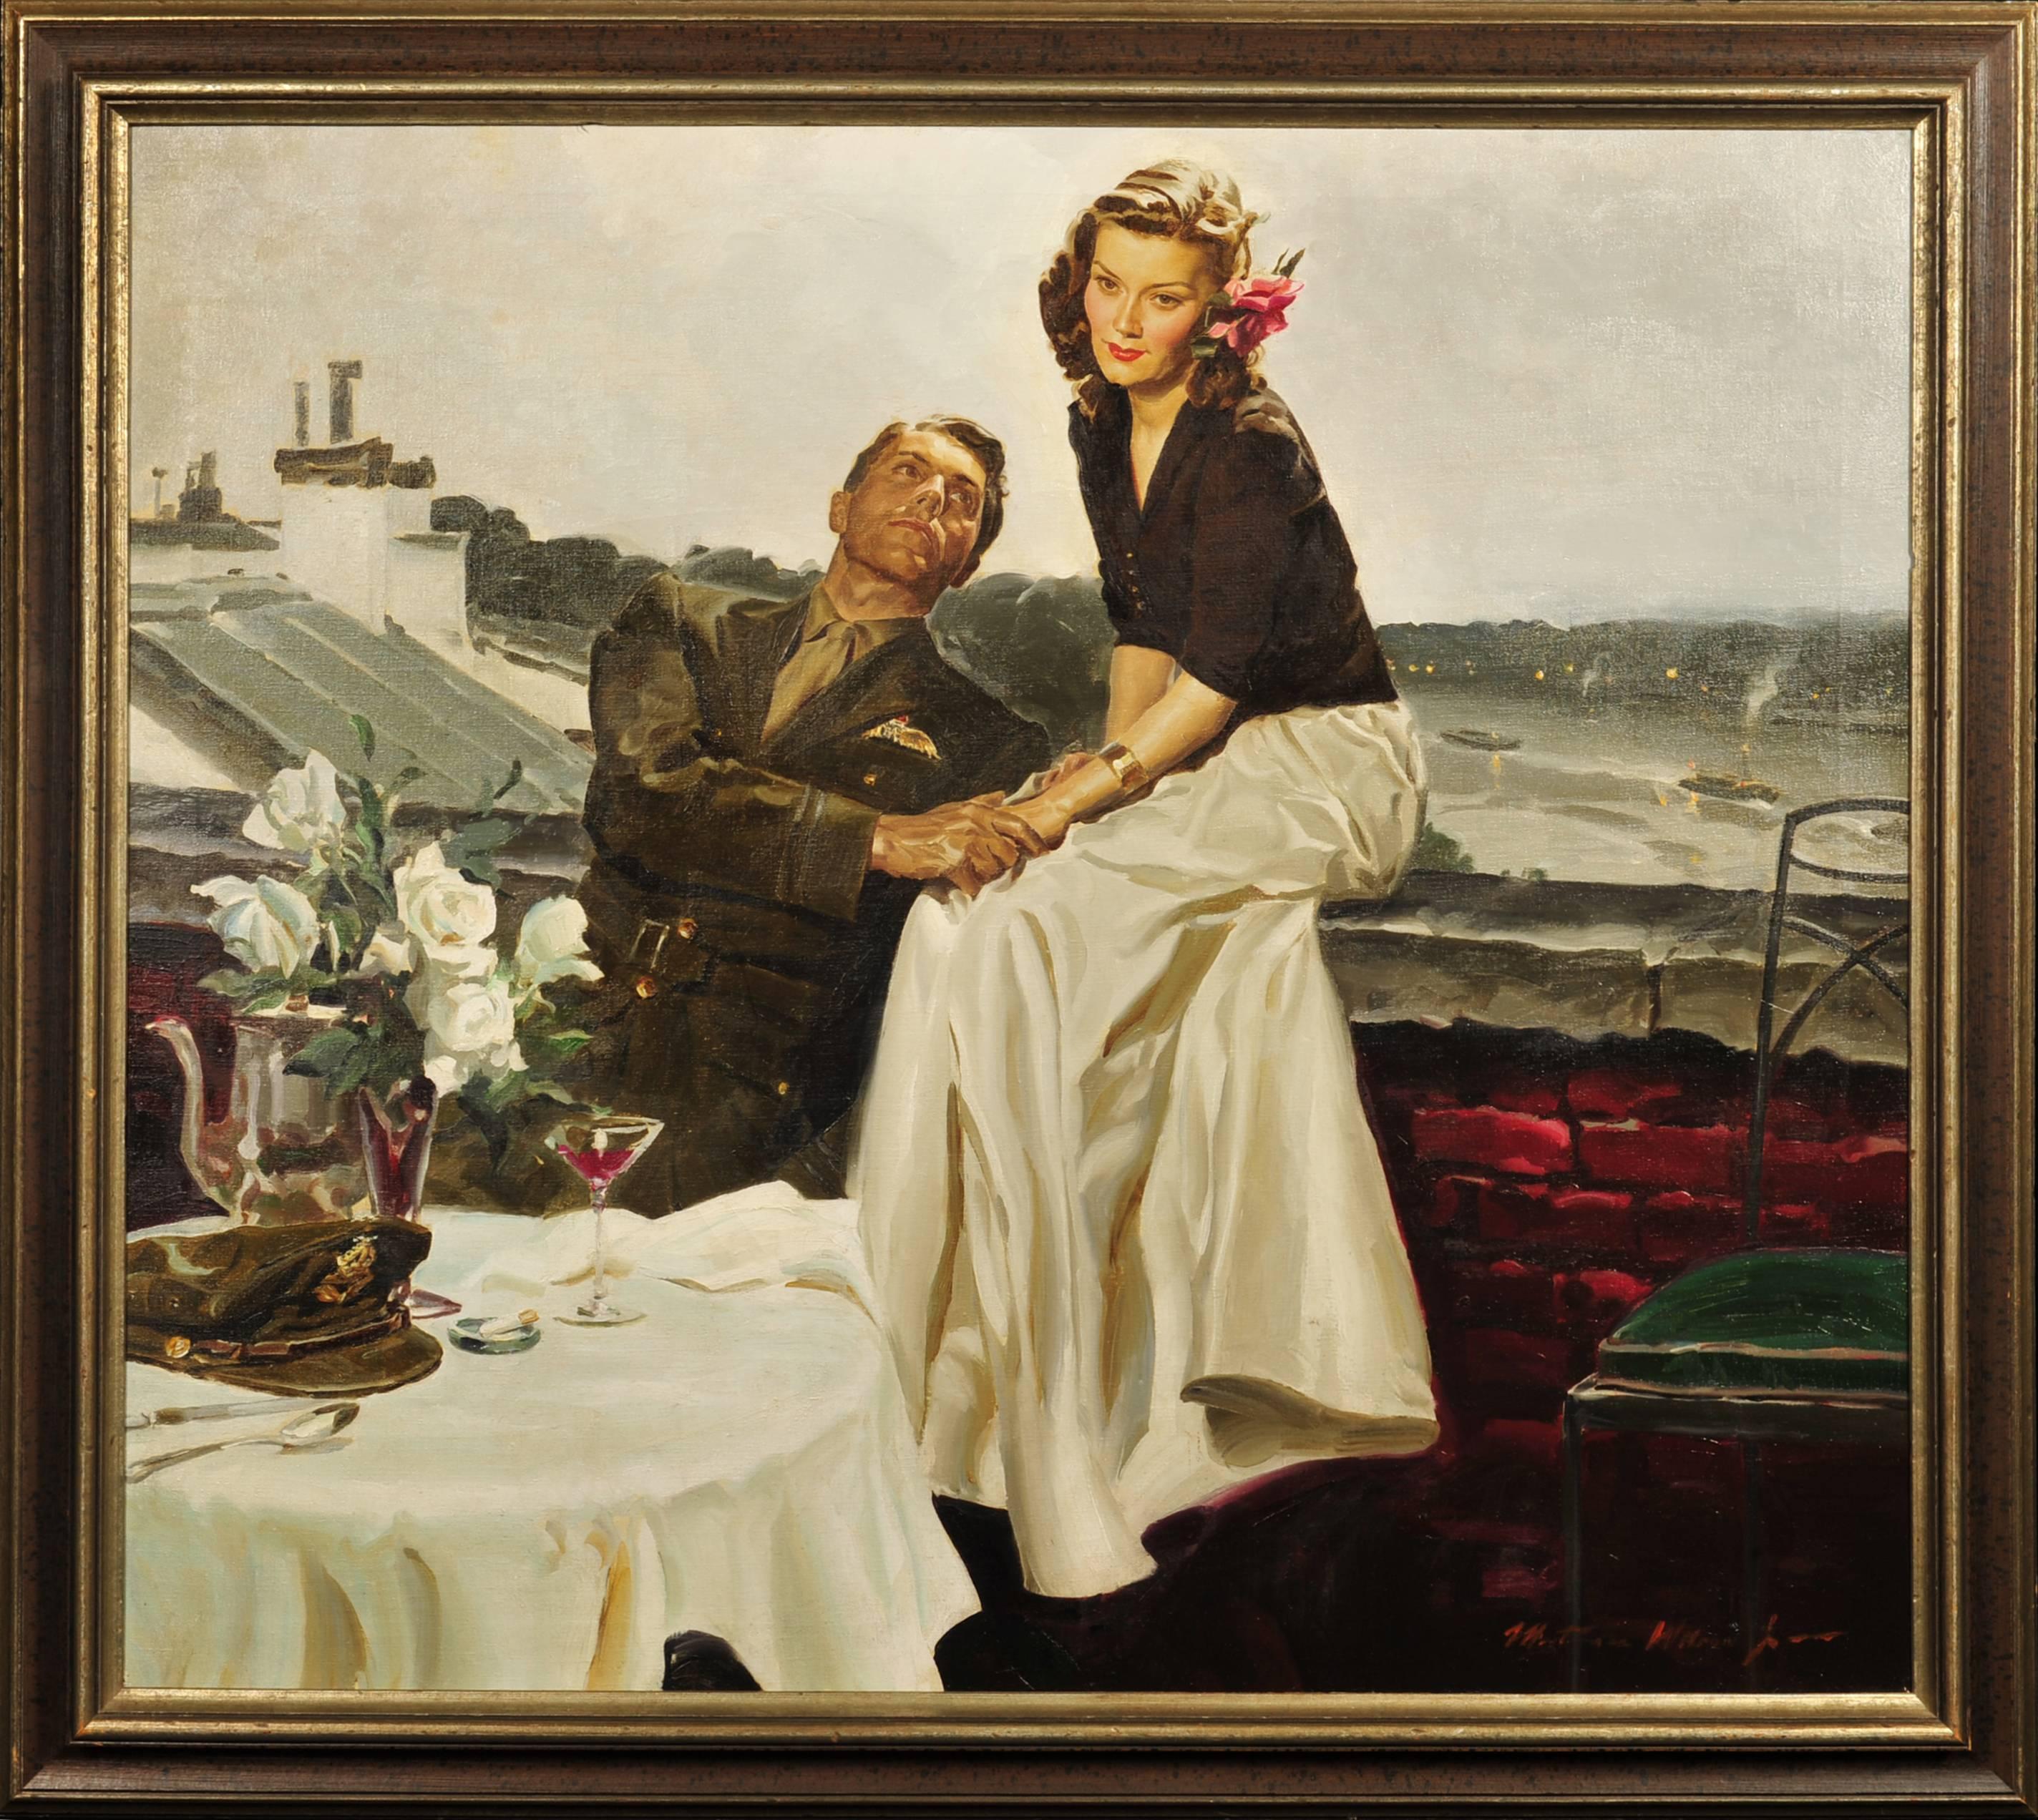 Couple At European Rooftop - Des paires sur un toit - Painting de Wilson Jr. Mortimer